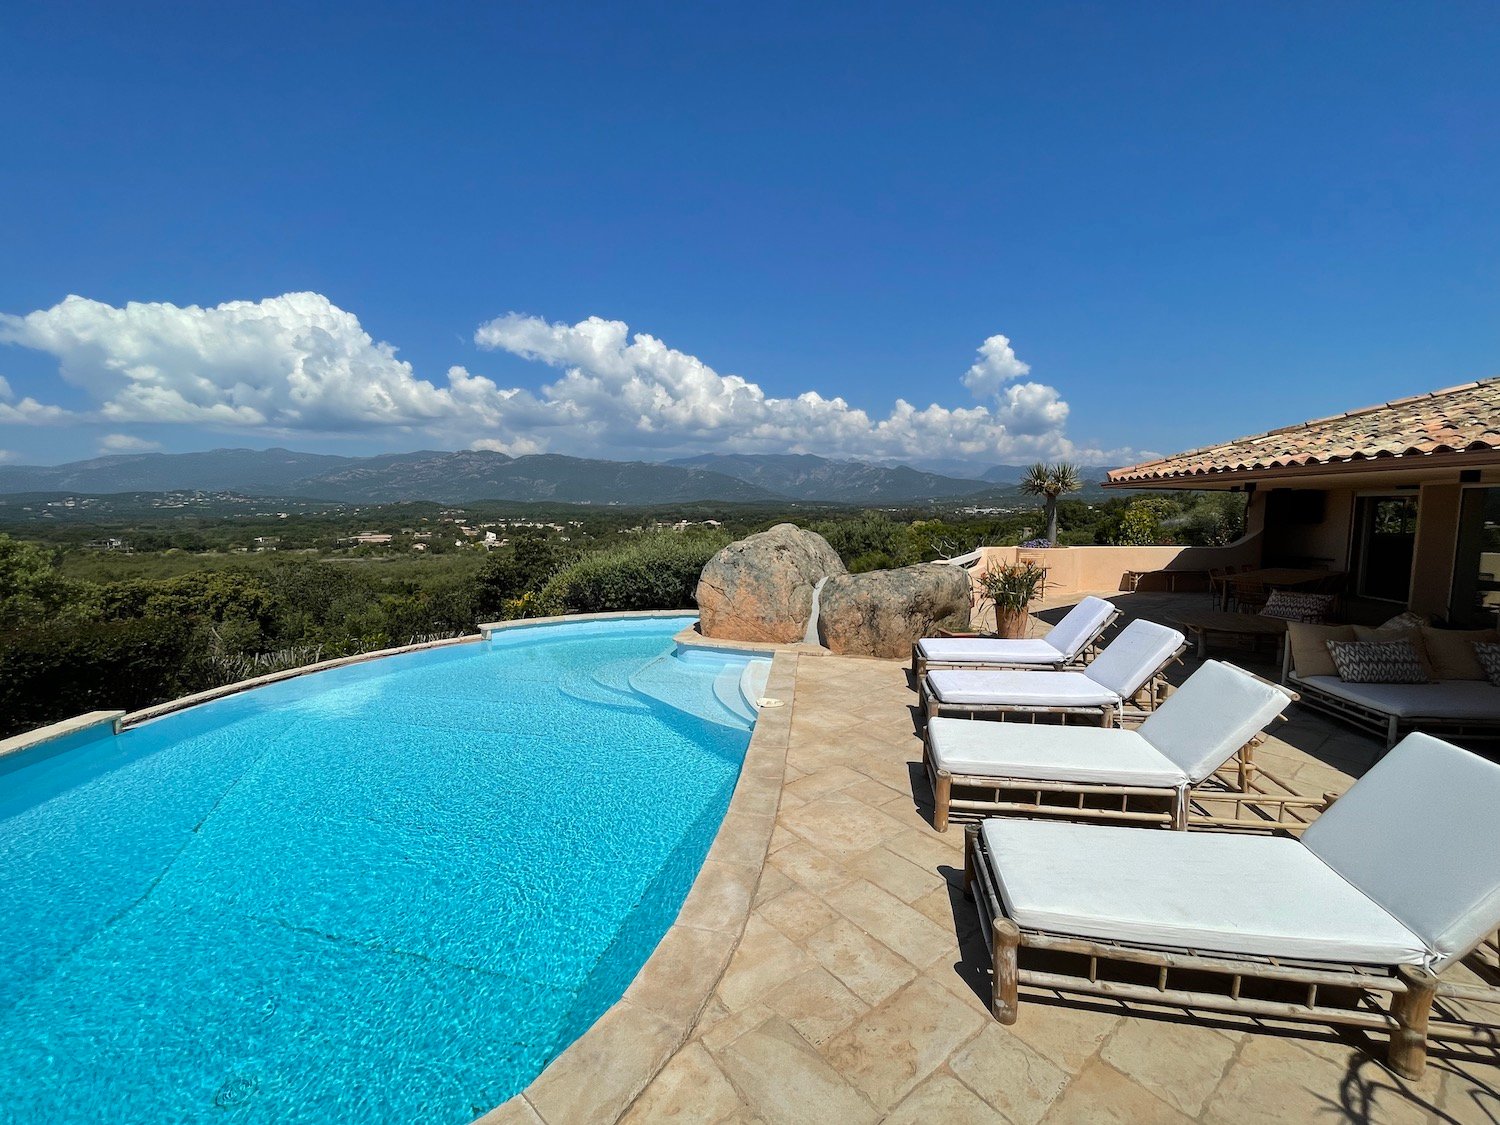 Location villa avec piscine Domaine de Cala Rossa Porto-Vecchio plage privées à pied, Corse du sud, vue mer, 5 chambres, luxe vue montagne